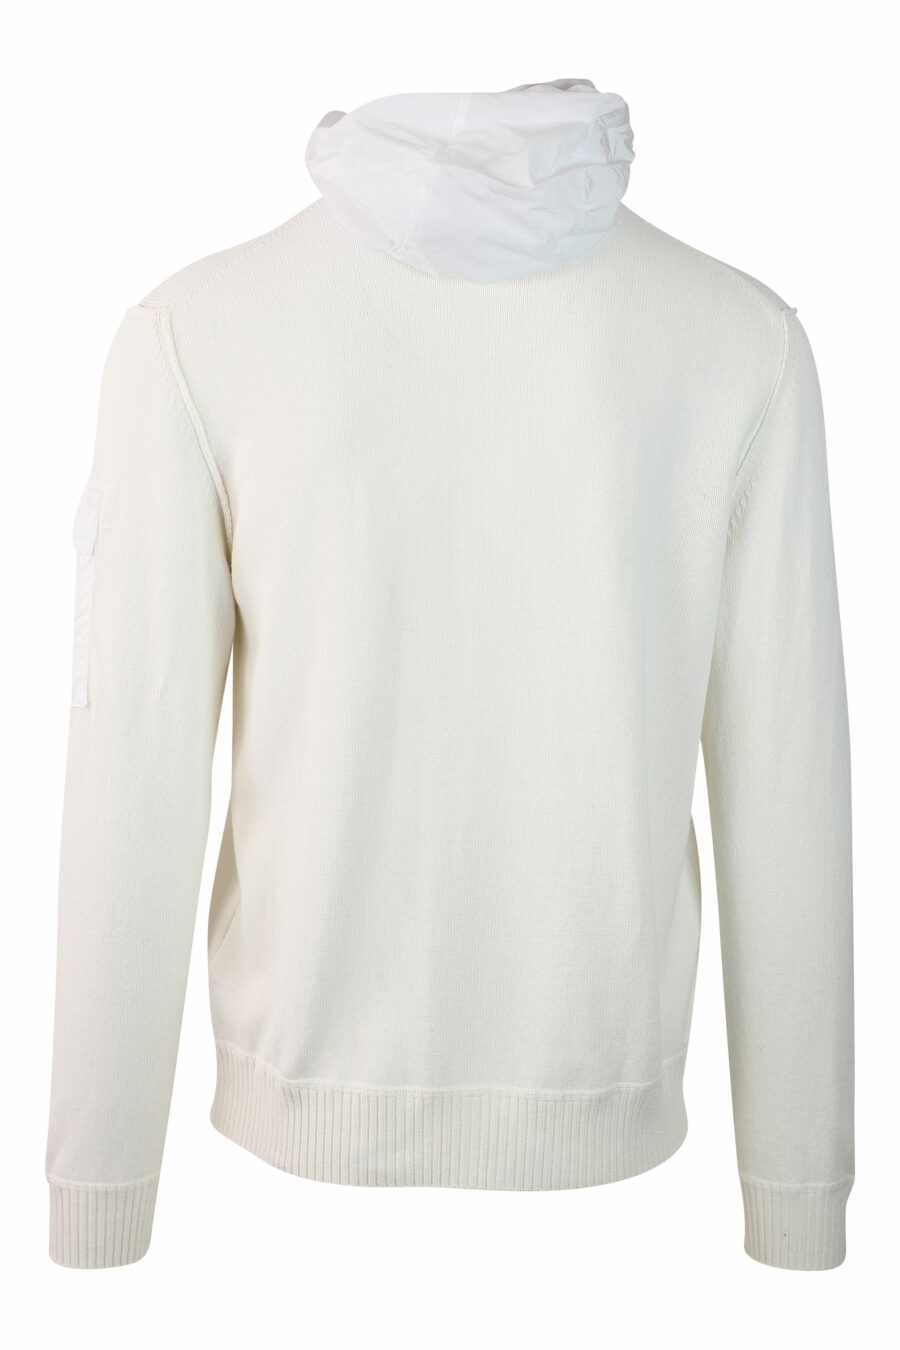 Sweat blanc avec capuche zippée et mini logo circulaire - IMG 0127